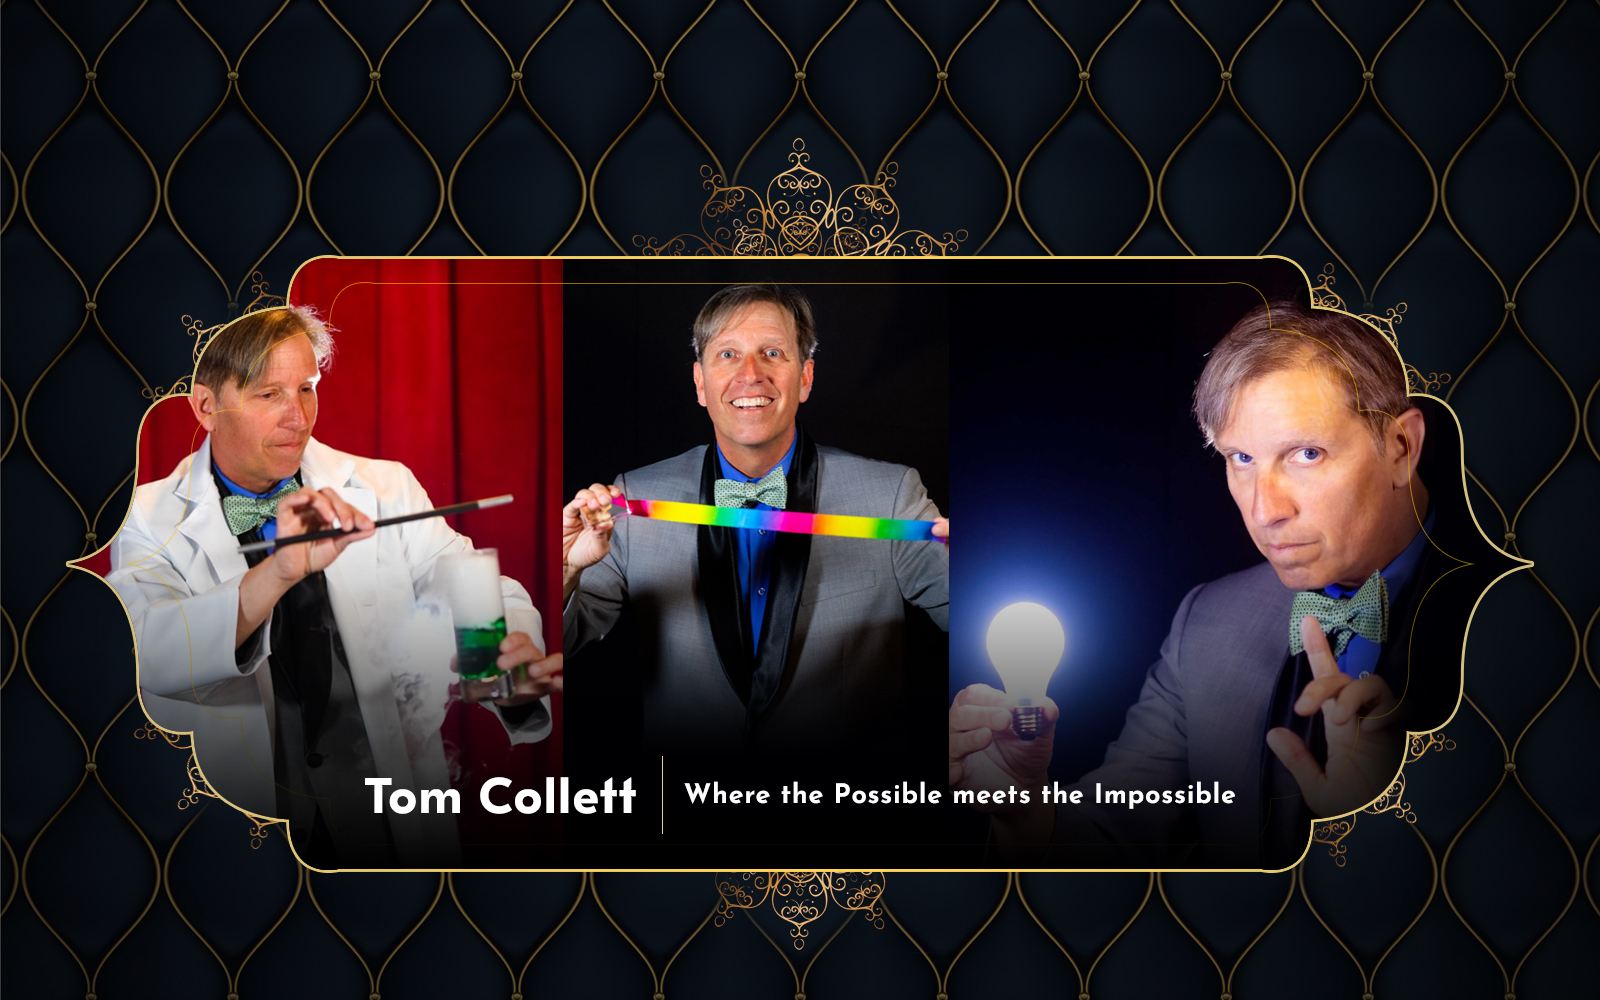 Tom Collett - Fremont based Magician